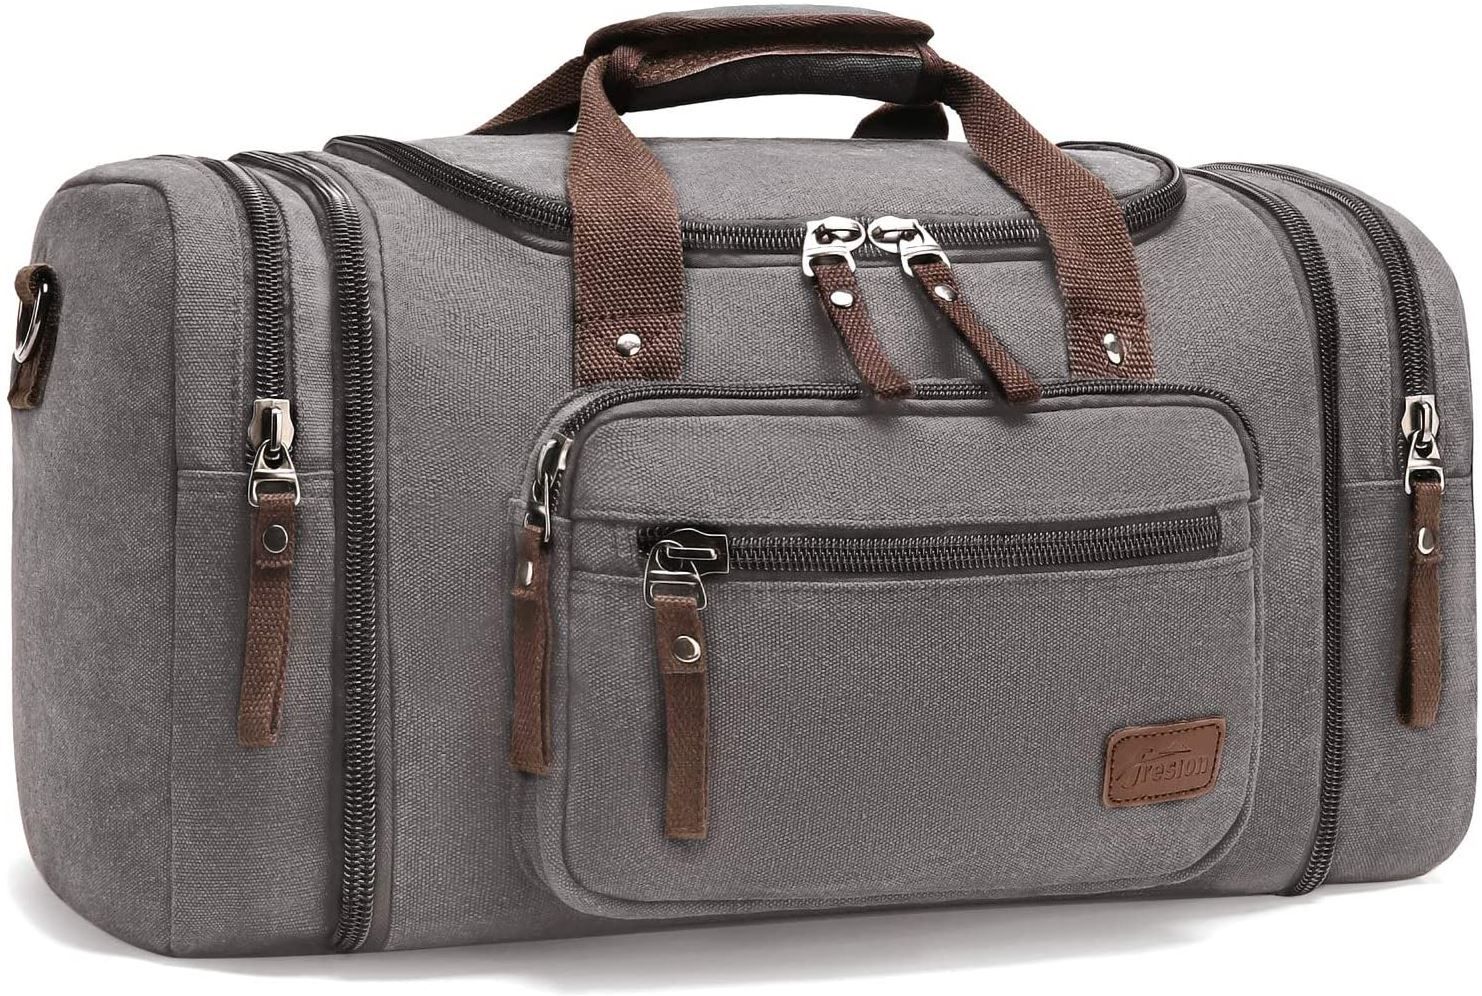 Fresion Unisex Reisetasche mit 40L in Grau für 19,99€ (statt 40€)